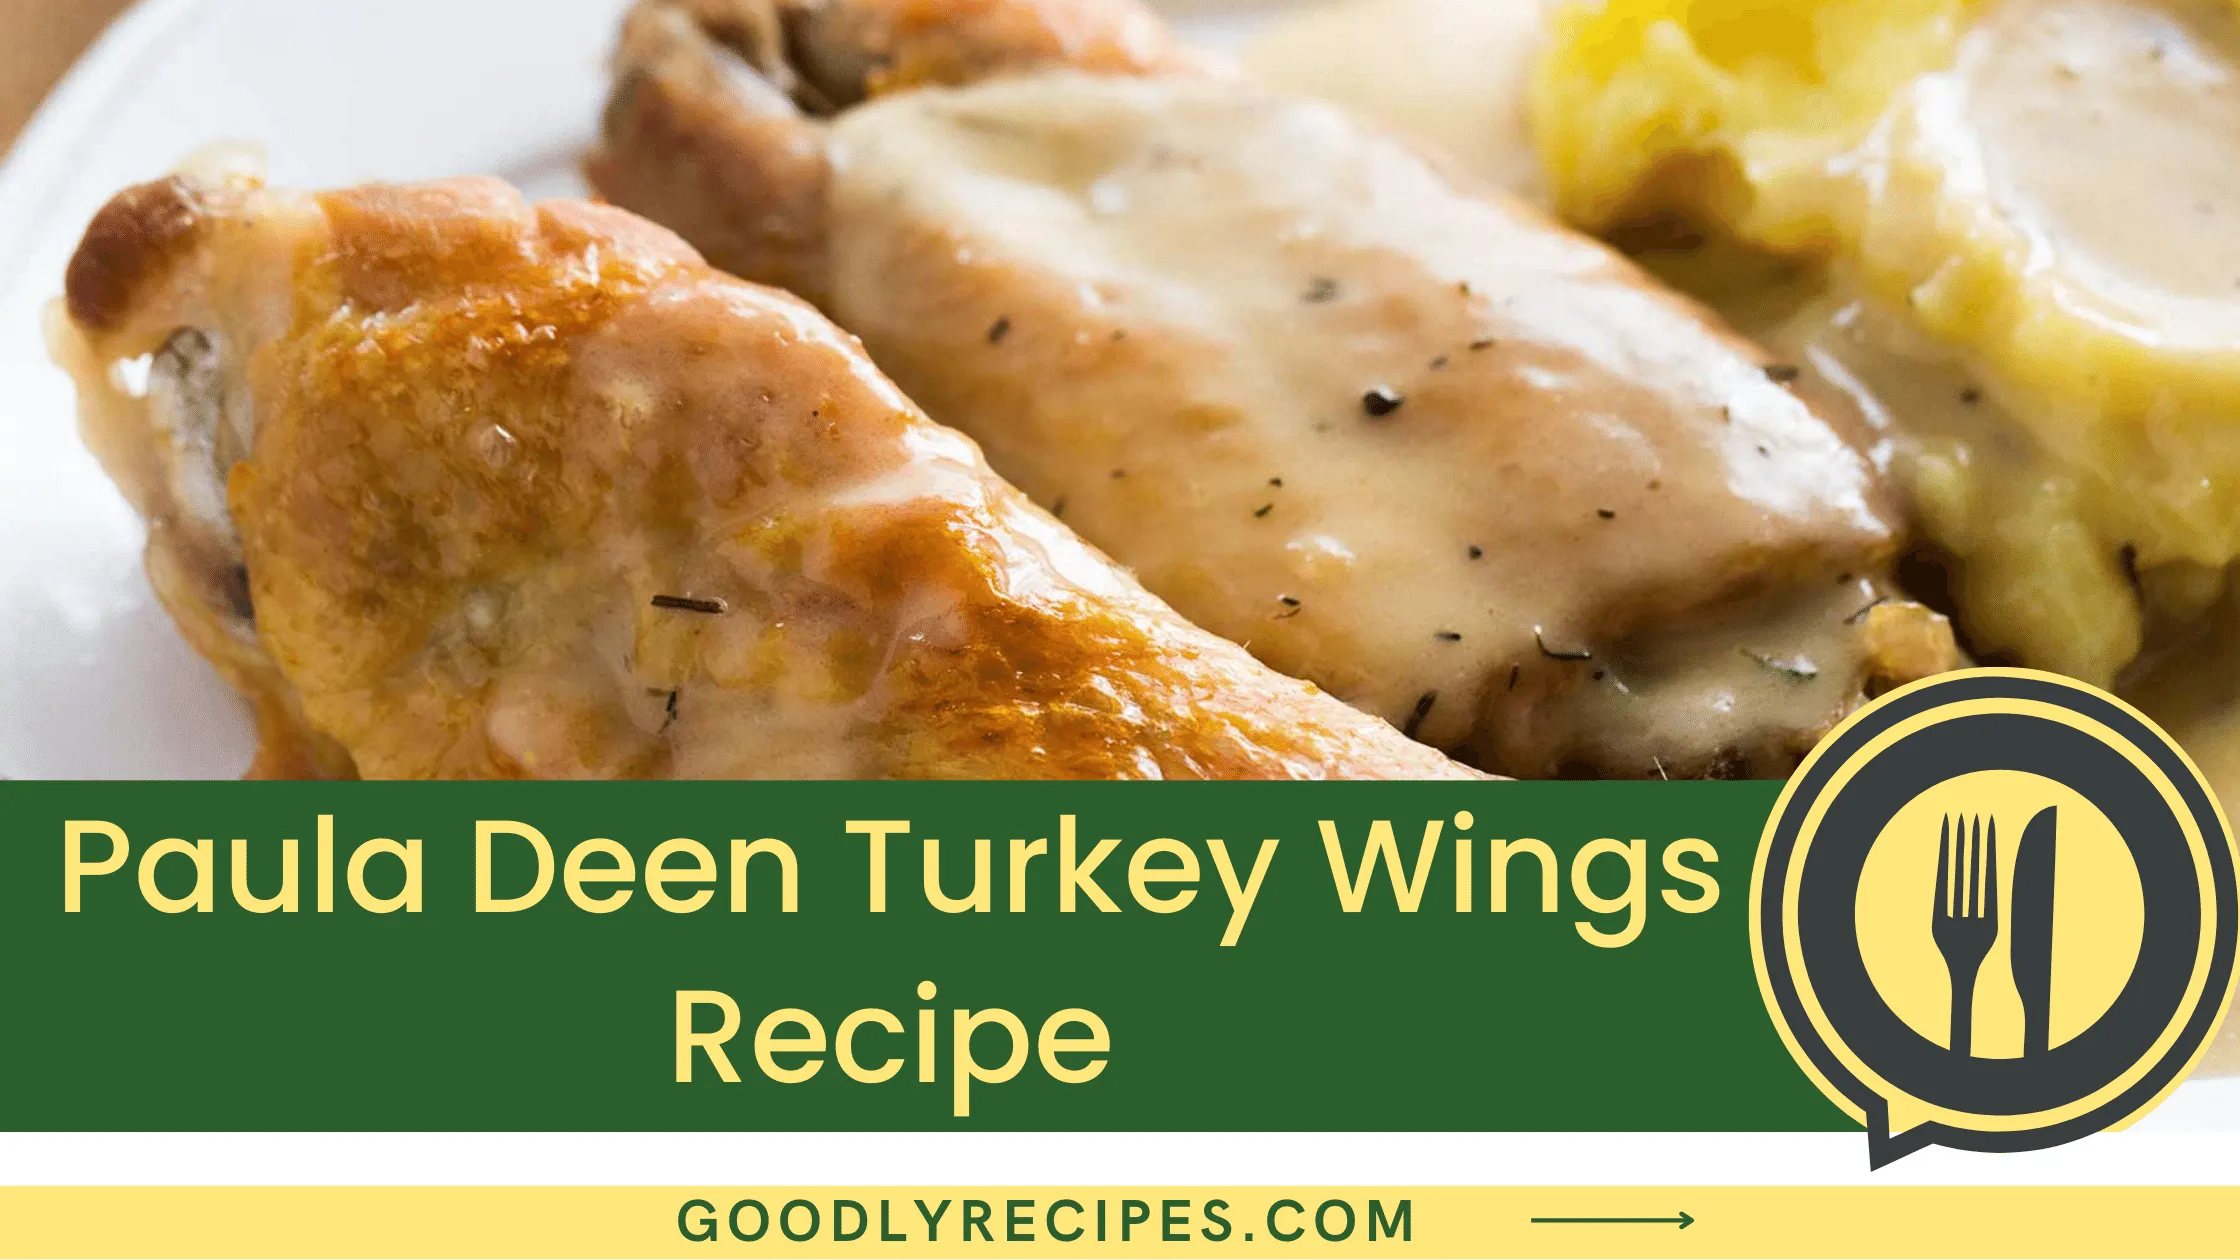 Paula Deen Turkey Wings Recipe - For Food Lovers